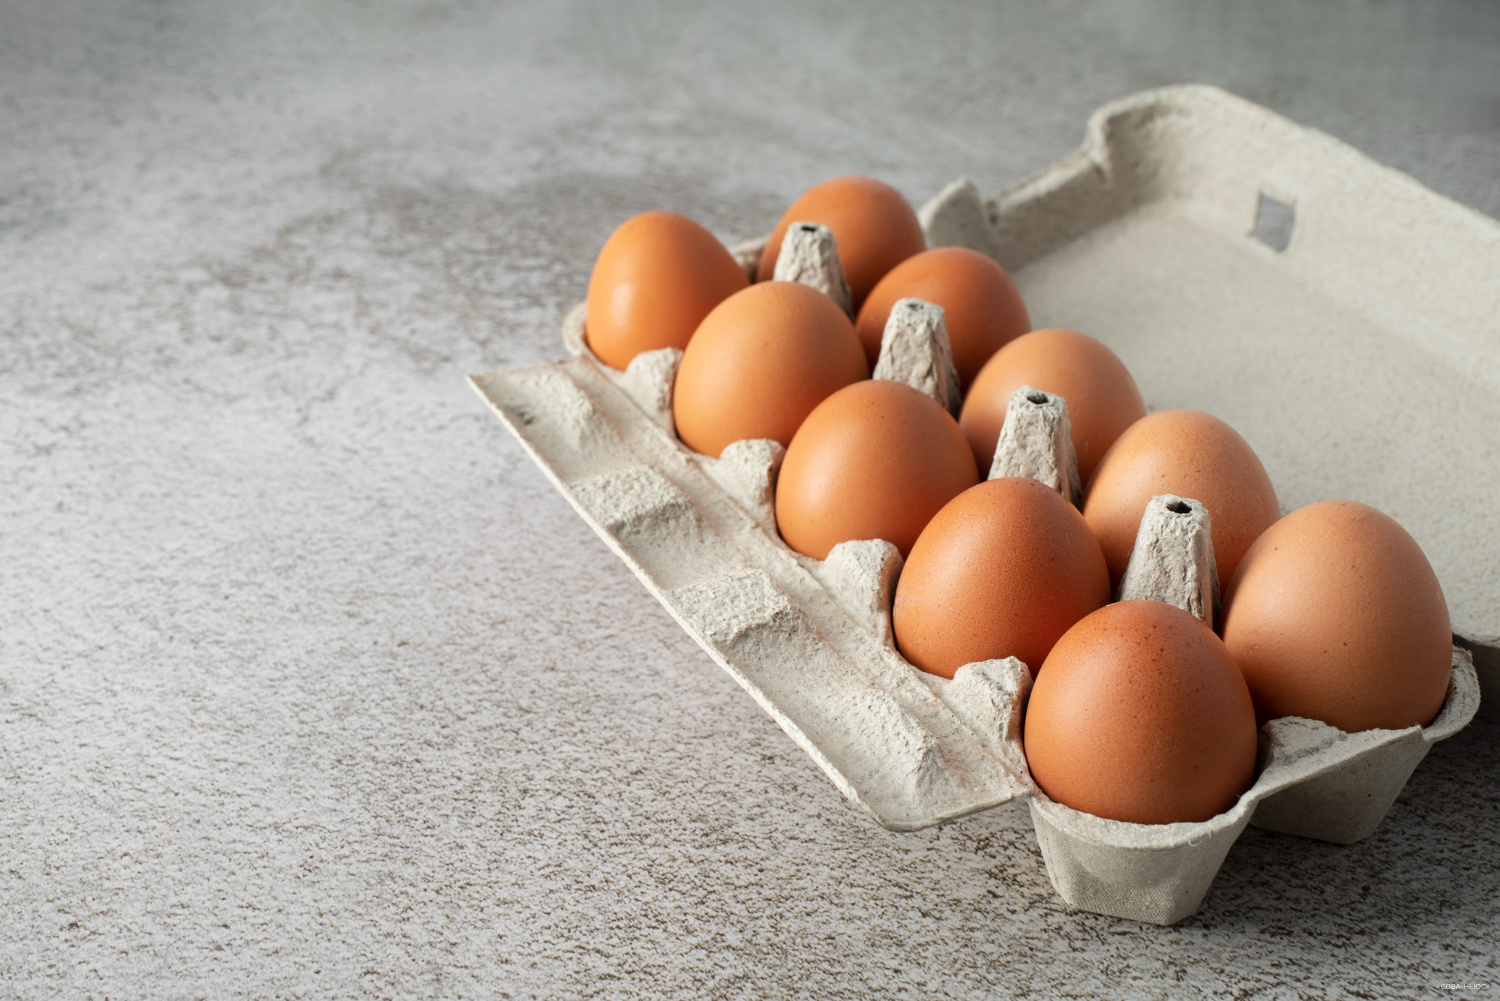 Правительство России снимает пошлины на импортные яйца в борьбе с ростом цен